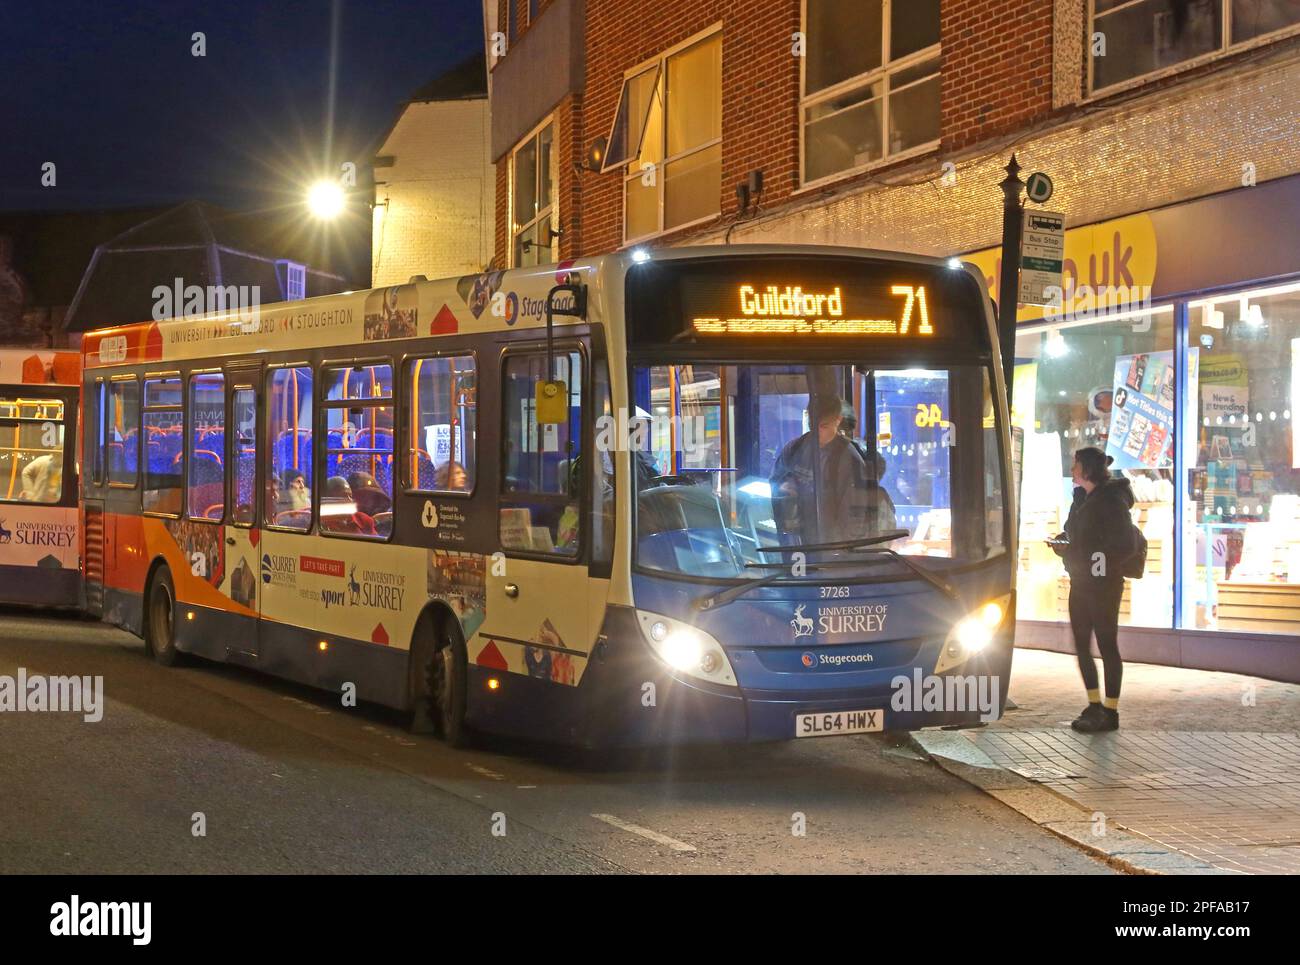 Transport en bus à Surrey, service Stagecoach 71 Midhurst à Guildford, SL64 HWX, unité 37263 au centre-ville de Godalming, service en soirée au crépuscule Banque D'Images